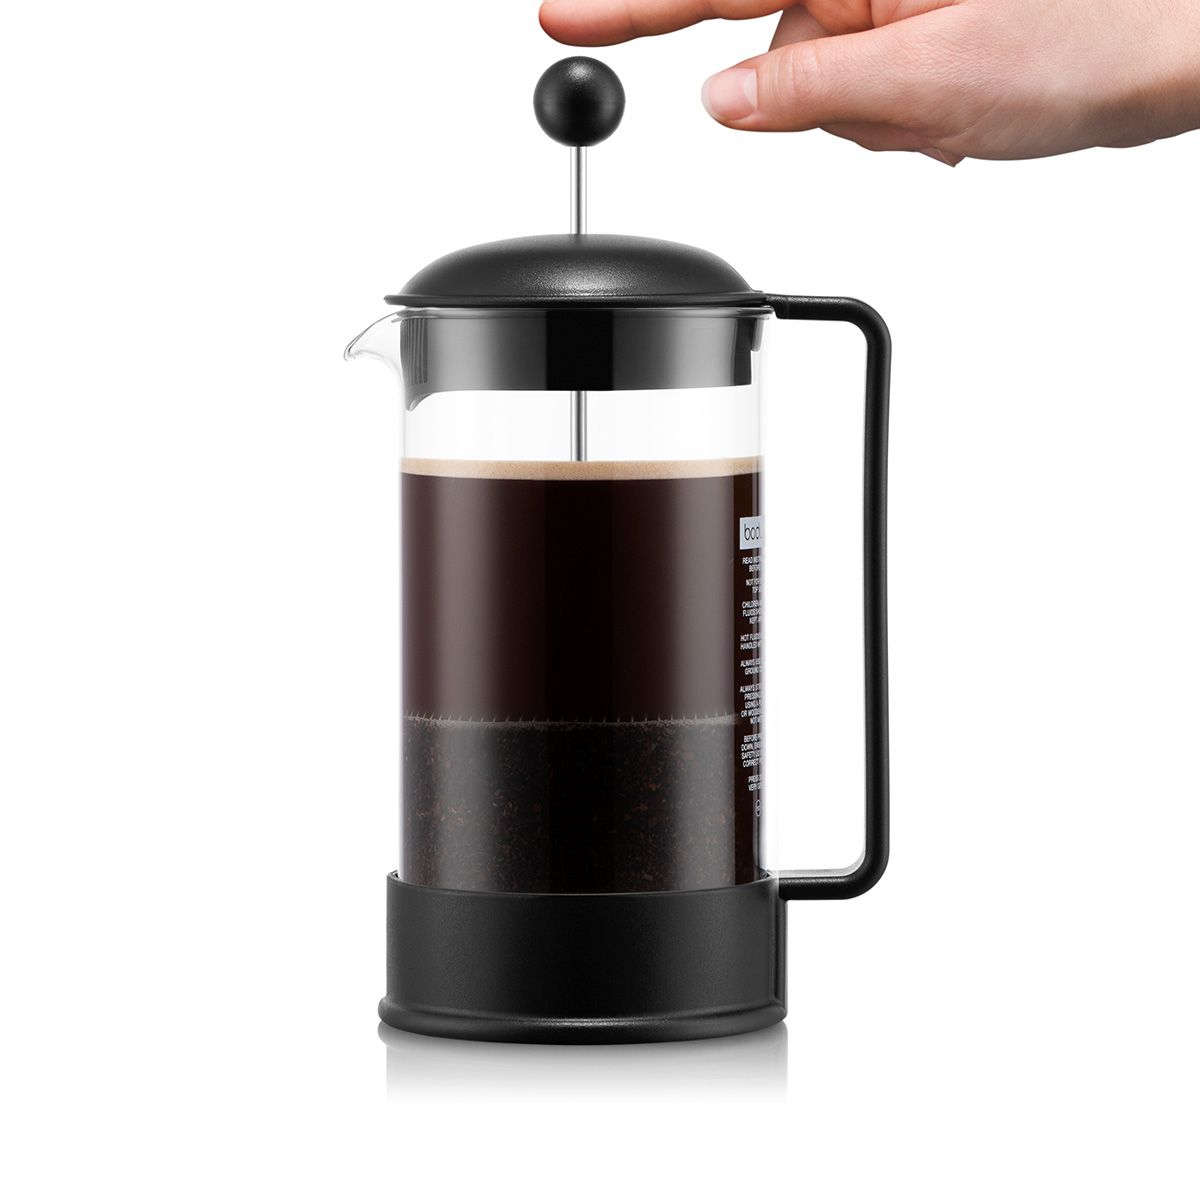 Bodum 51Oz 巴西法压咖啡机，适合咖啡/茶